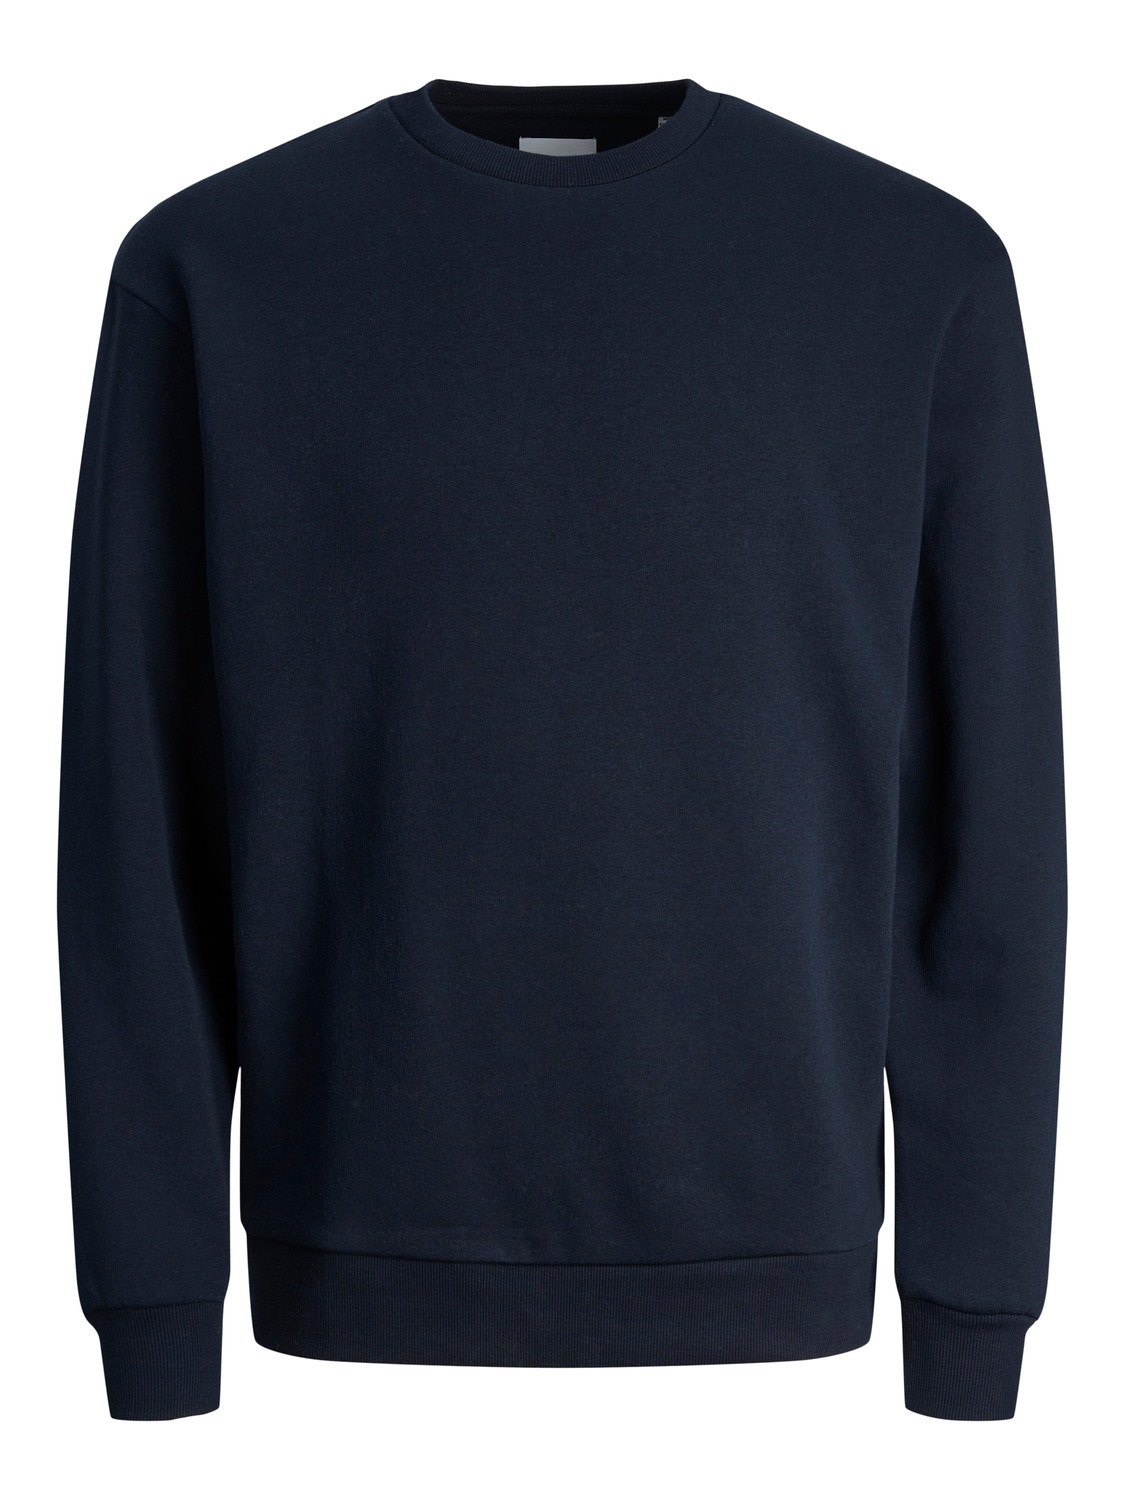 Jack & Jones Einfarbig Sweatshirt mit Rundhals Für jungs -Navy Blazer - 12250530